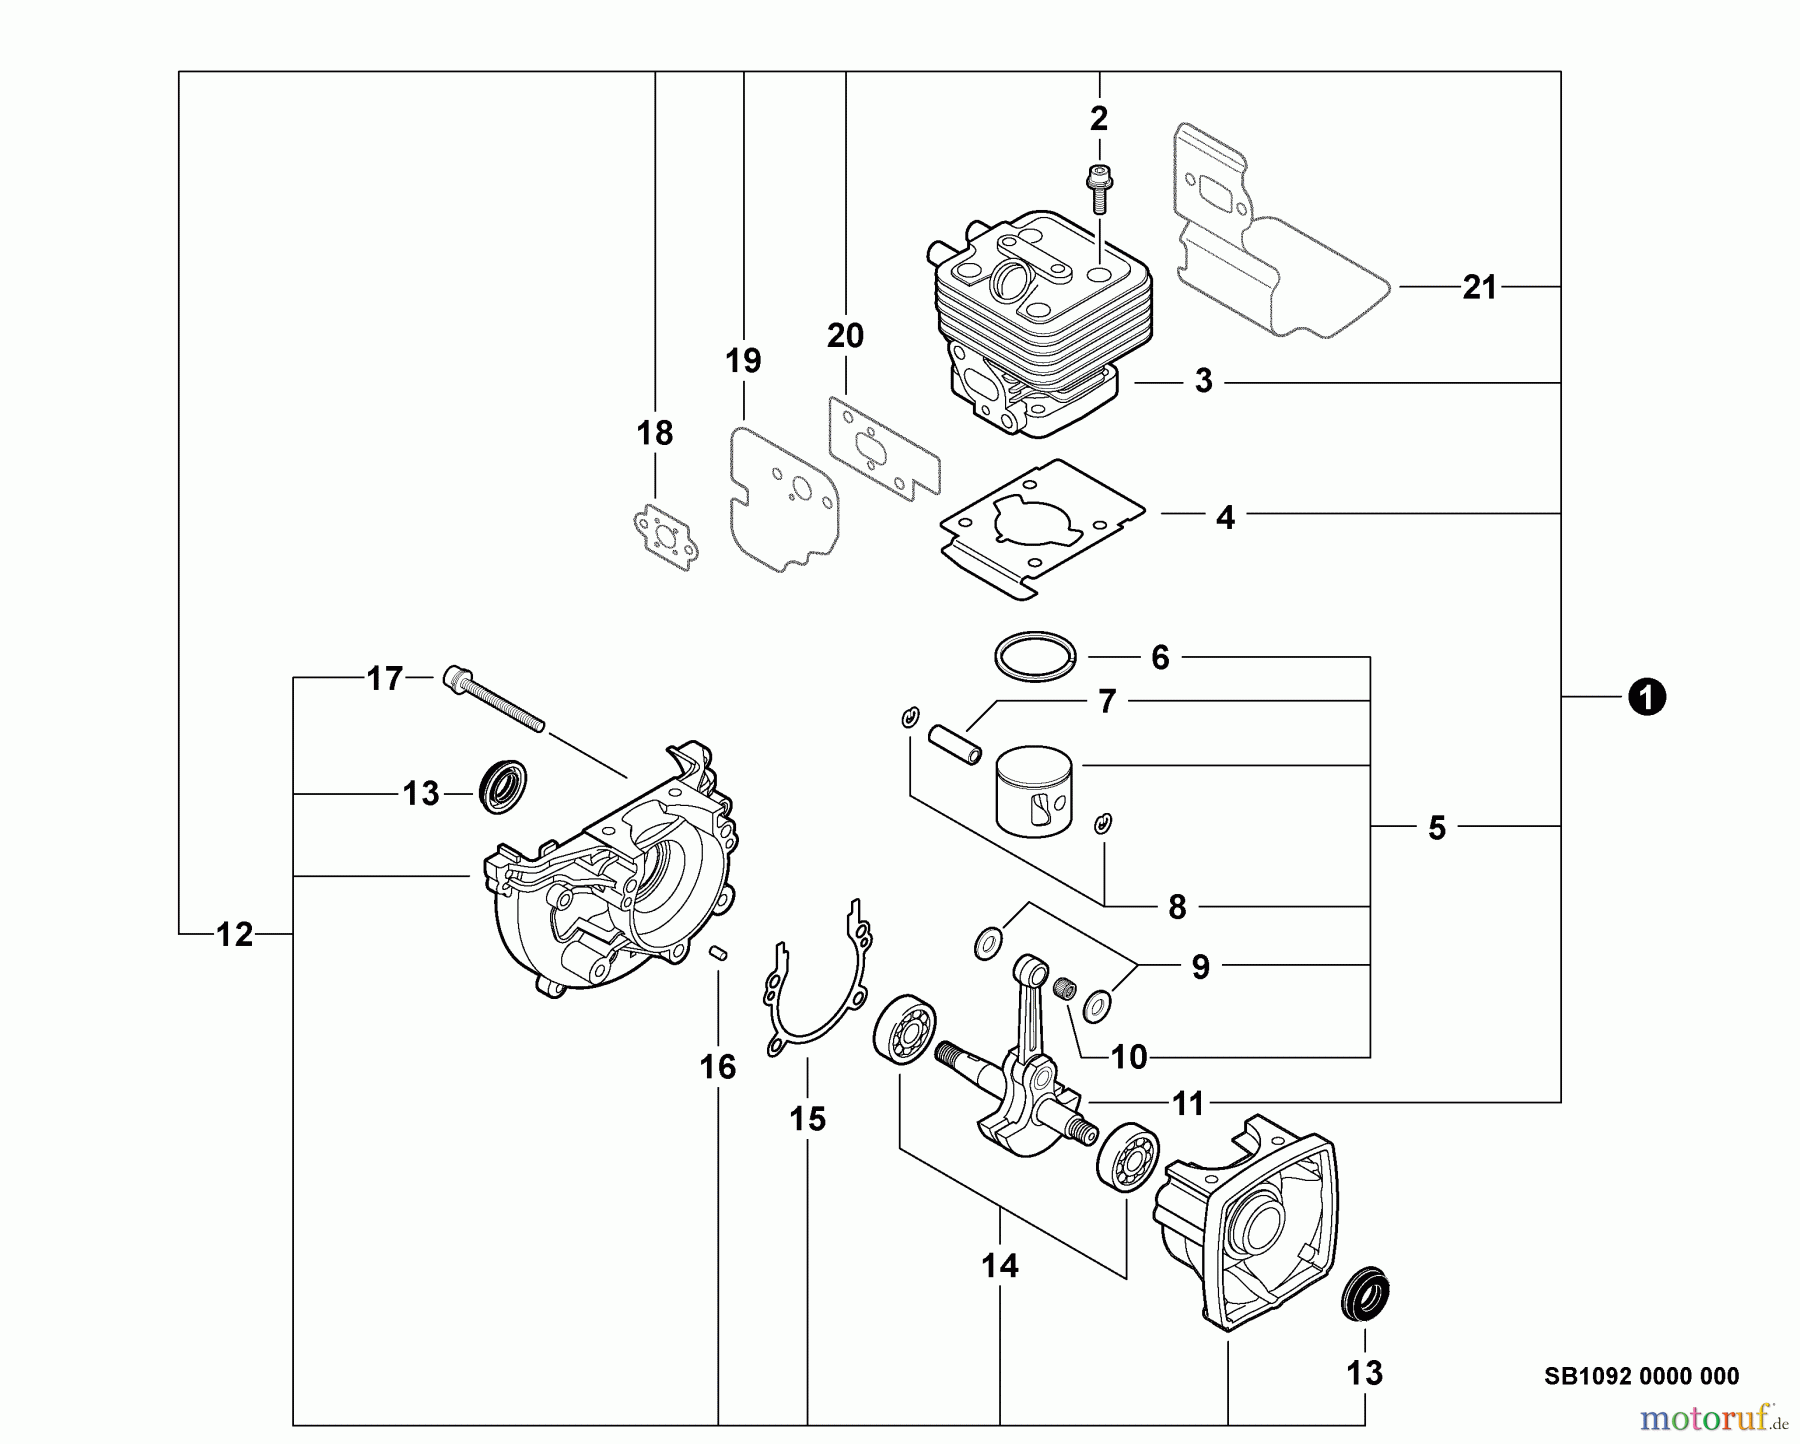  Echo Bläser / Sauger / Häcksler / Mulchgeräte	 ES-255 - Echo Shredder/Vacuum, S/N: P07213001001 - P07213999999 Engine, Short Block -- SB1092